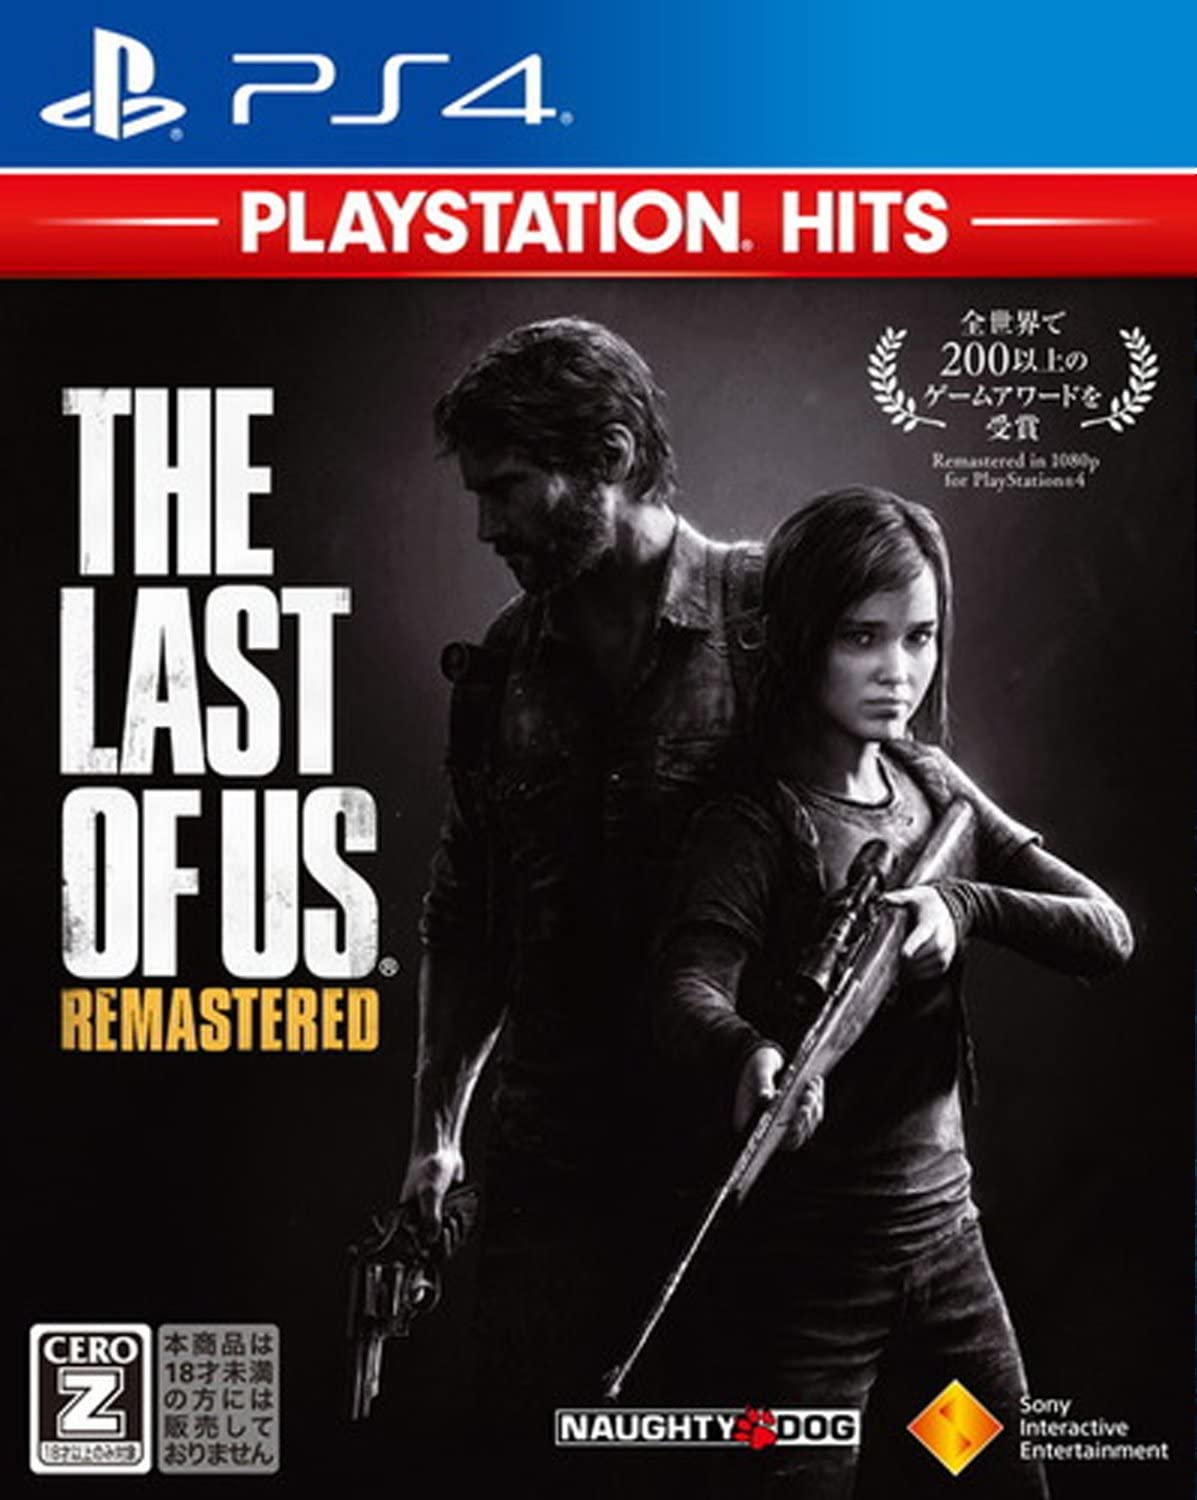 【送料無料】【中古】PS4 PlayStation 4 The Last of Us Remastered PlayStation Hits ラスト オブ アス リマスタード 【CEROレーティング「Z」】